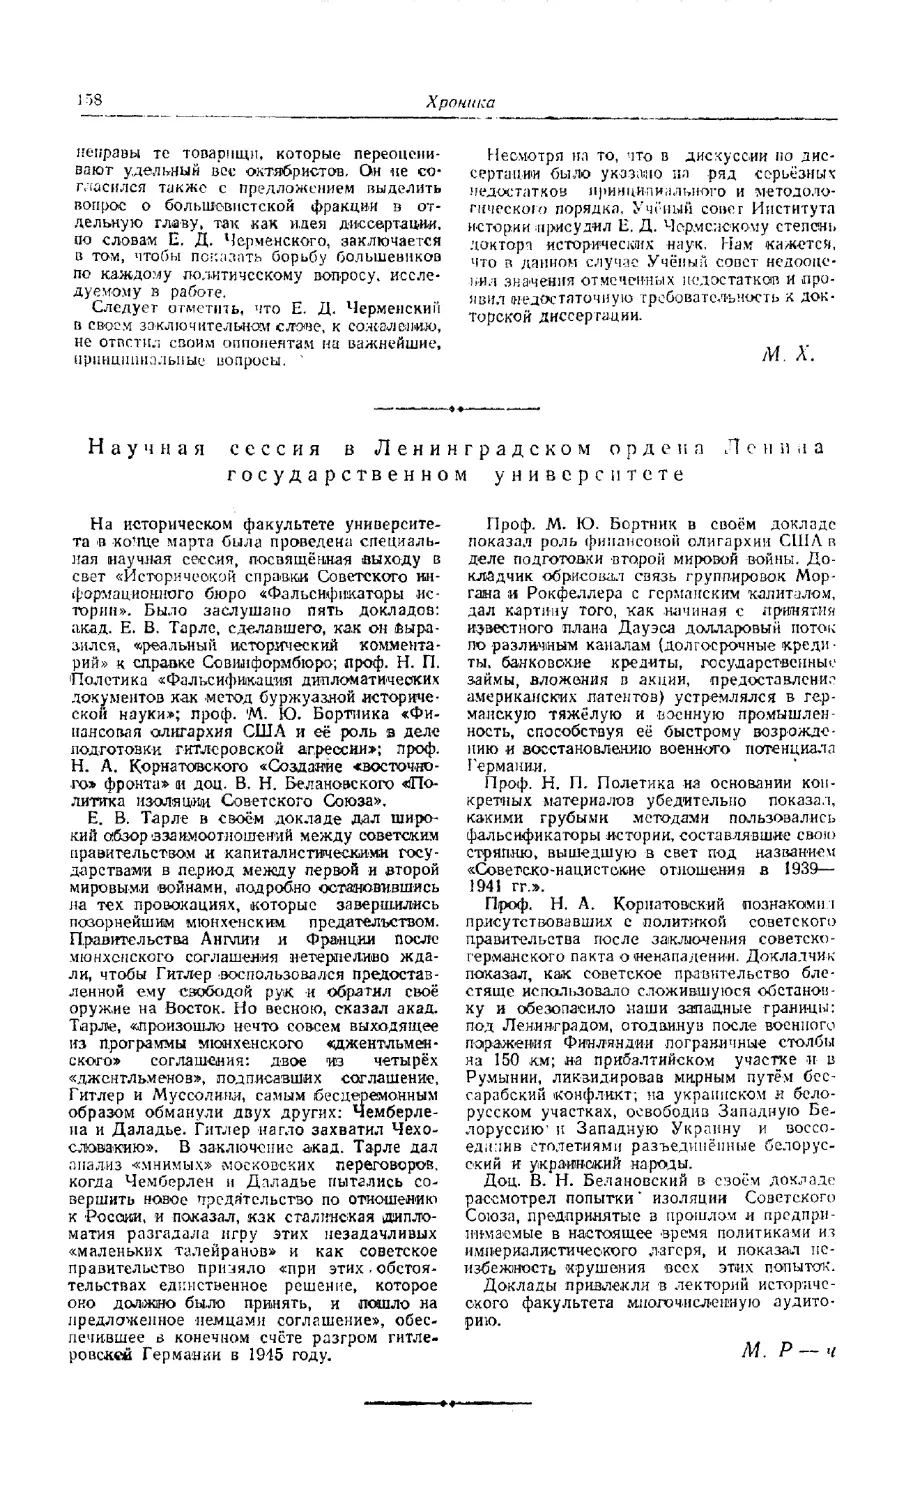 М. Р-ч. — Научная сессия в Ленинградском ордена Ленина государственном университете